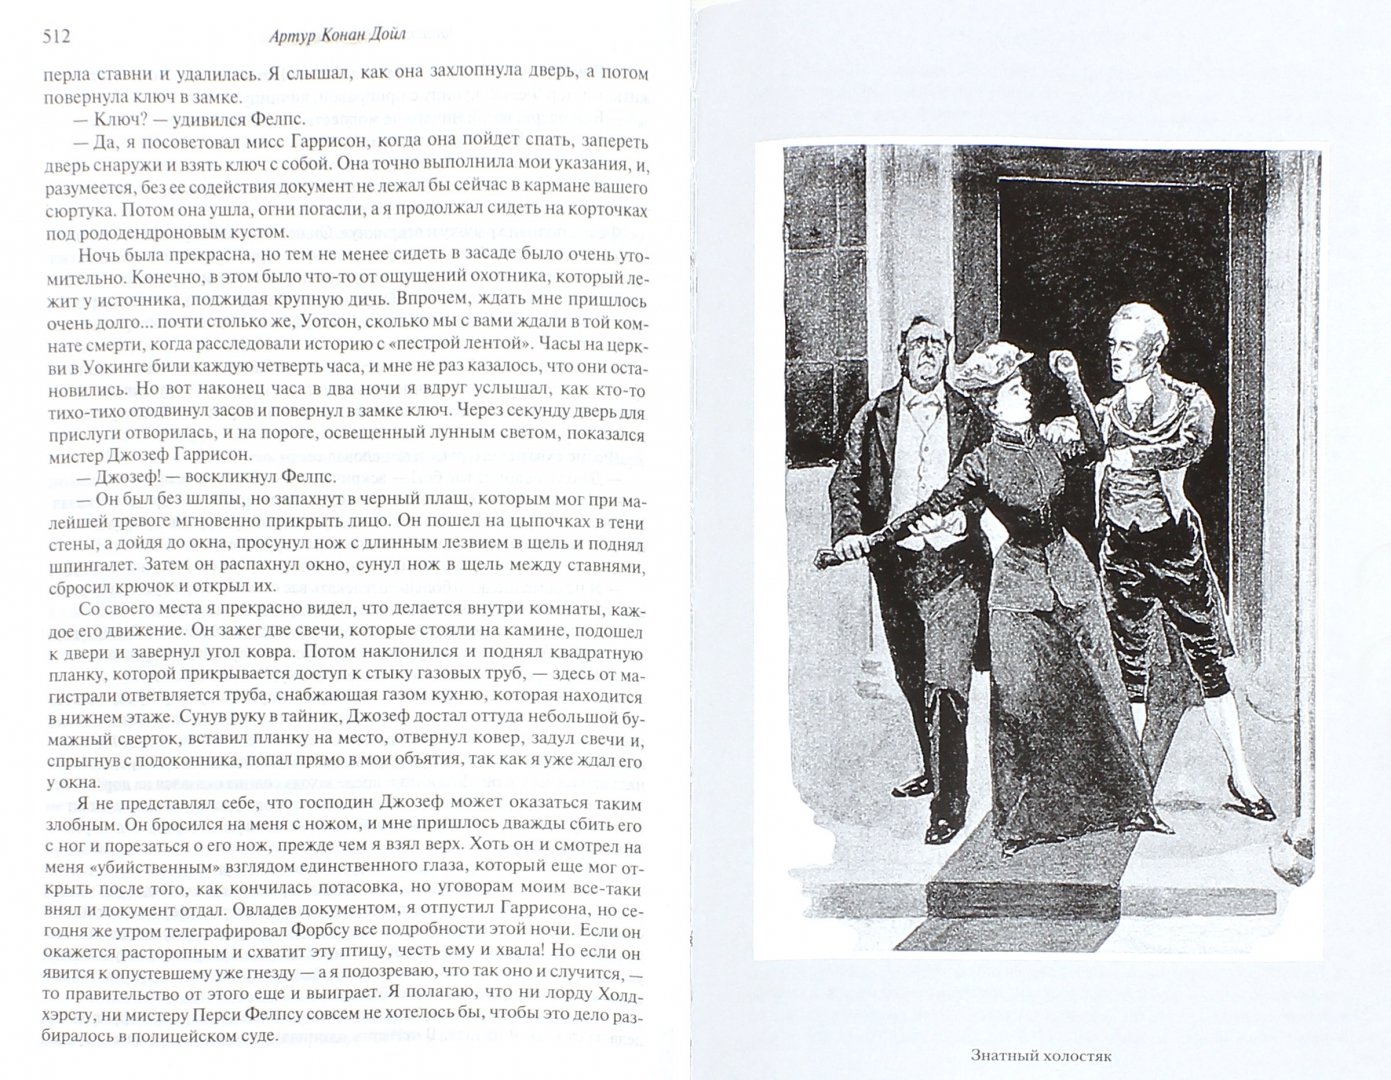 Иллюстрация 1 из 19 для Полное собрание повестей и рассказов о Шерлоке Холмсе в одном томе - Артур Дойл | Лабиринт - книги. Источник: Лабиринт